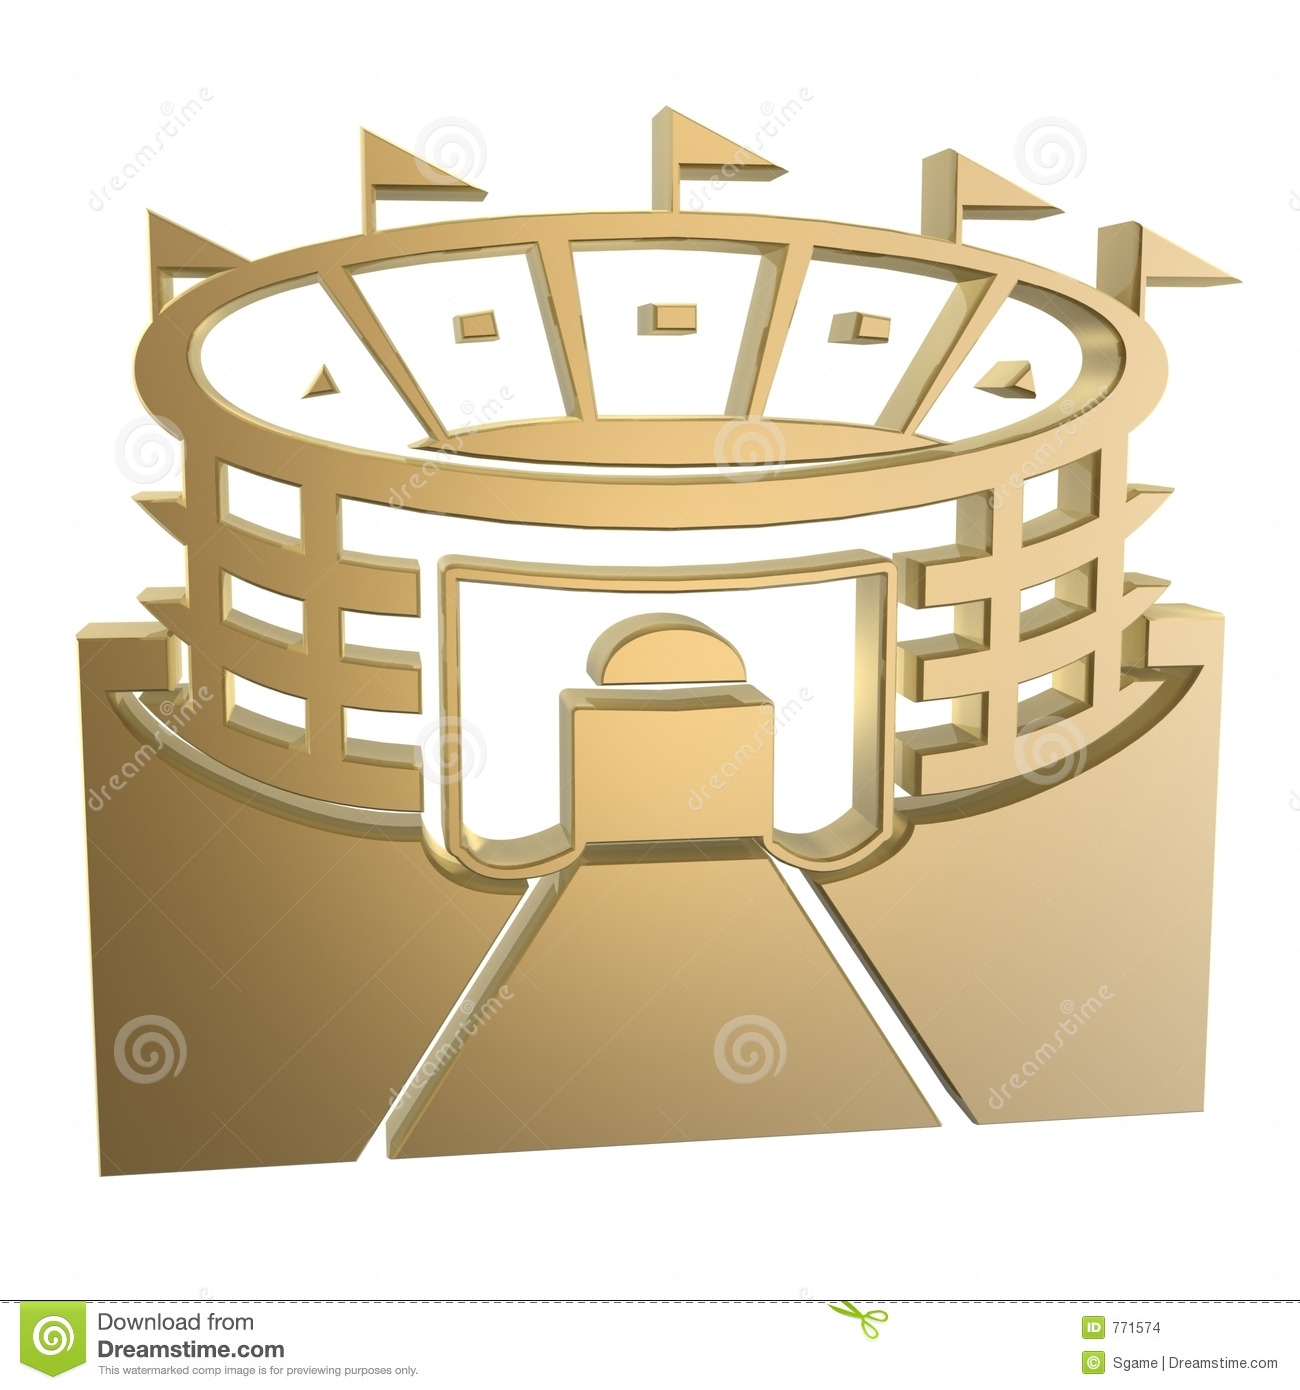 Stadium Symbol Stock Images   Image  771574